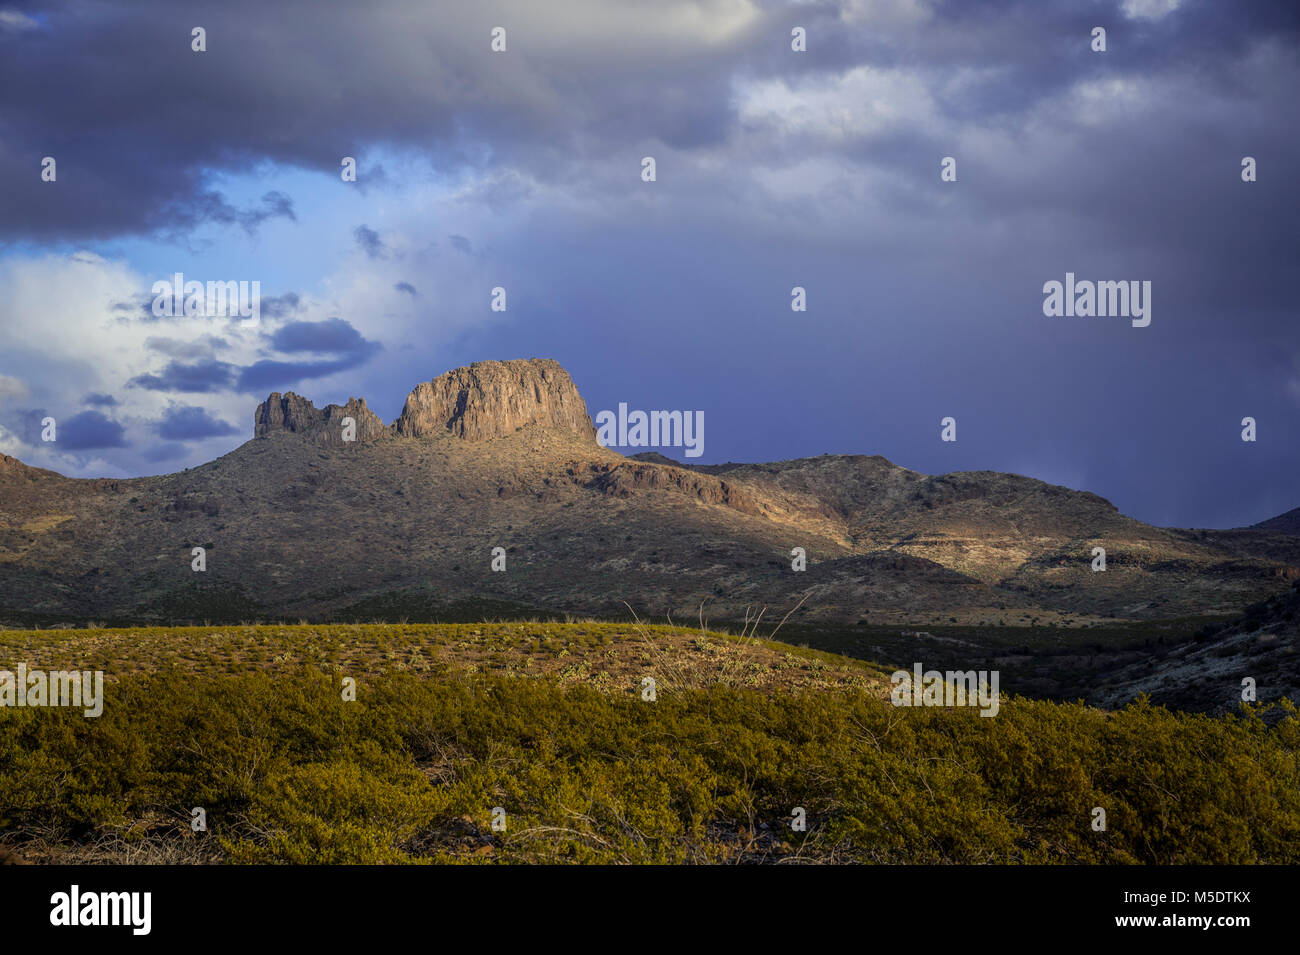 Wüste Berg Mit Lichtschacht, Arizona, USA Stockfoto